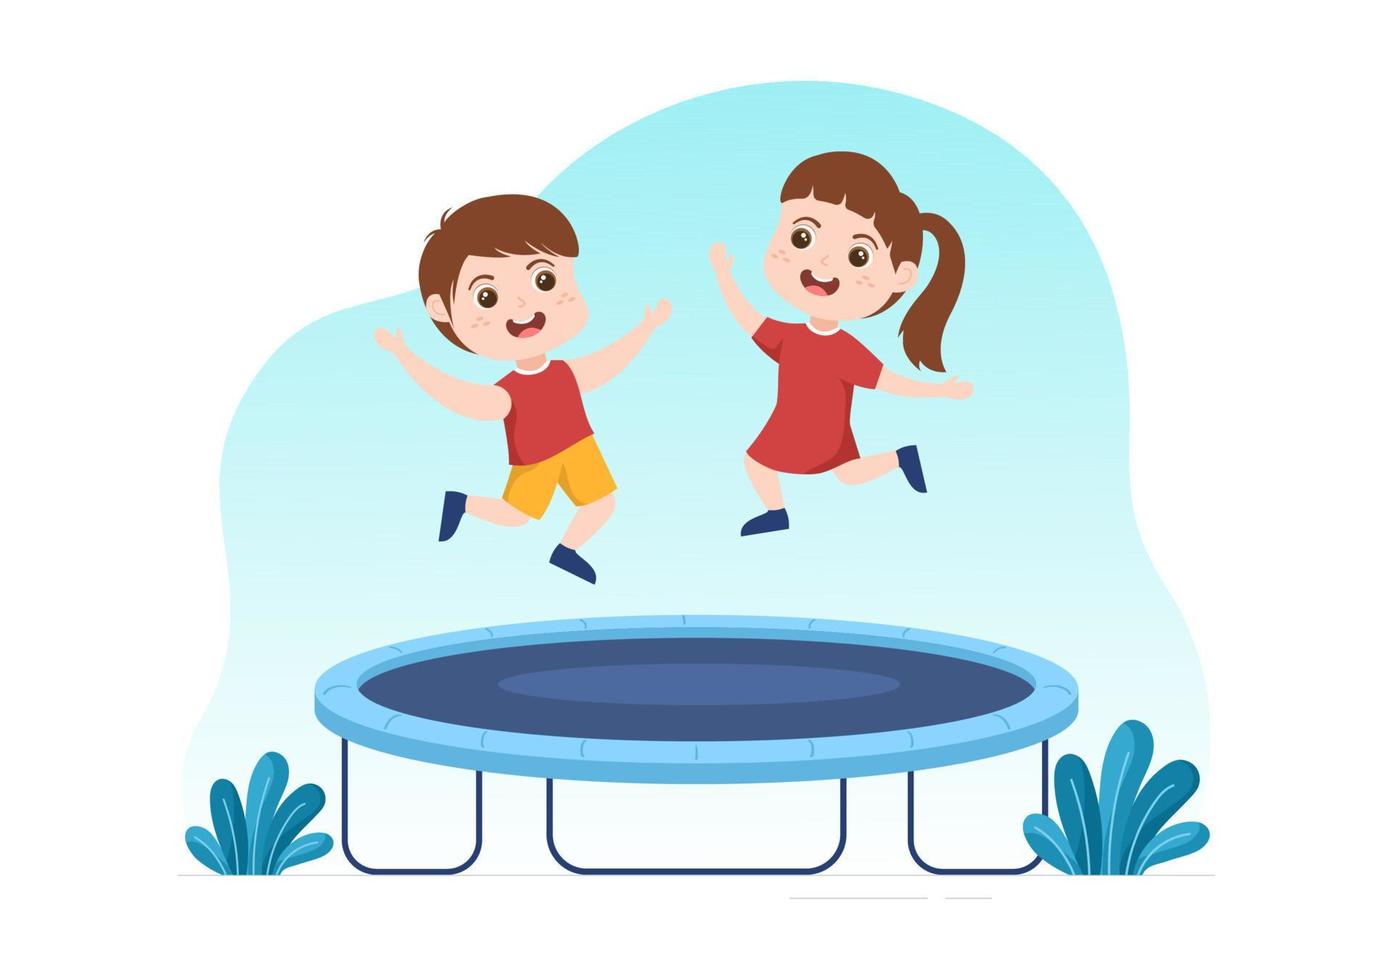 ilustração de trampolim com crianças pequenas pulando em trampolins na mão desenhada modelo de plano de fundo de atividade ao ar livre de verão de desenhos animados vetor